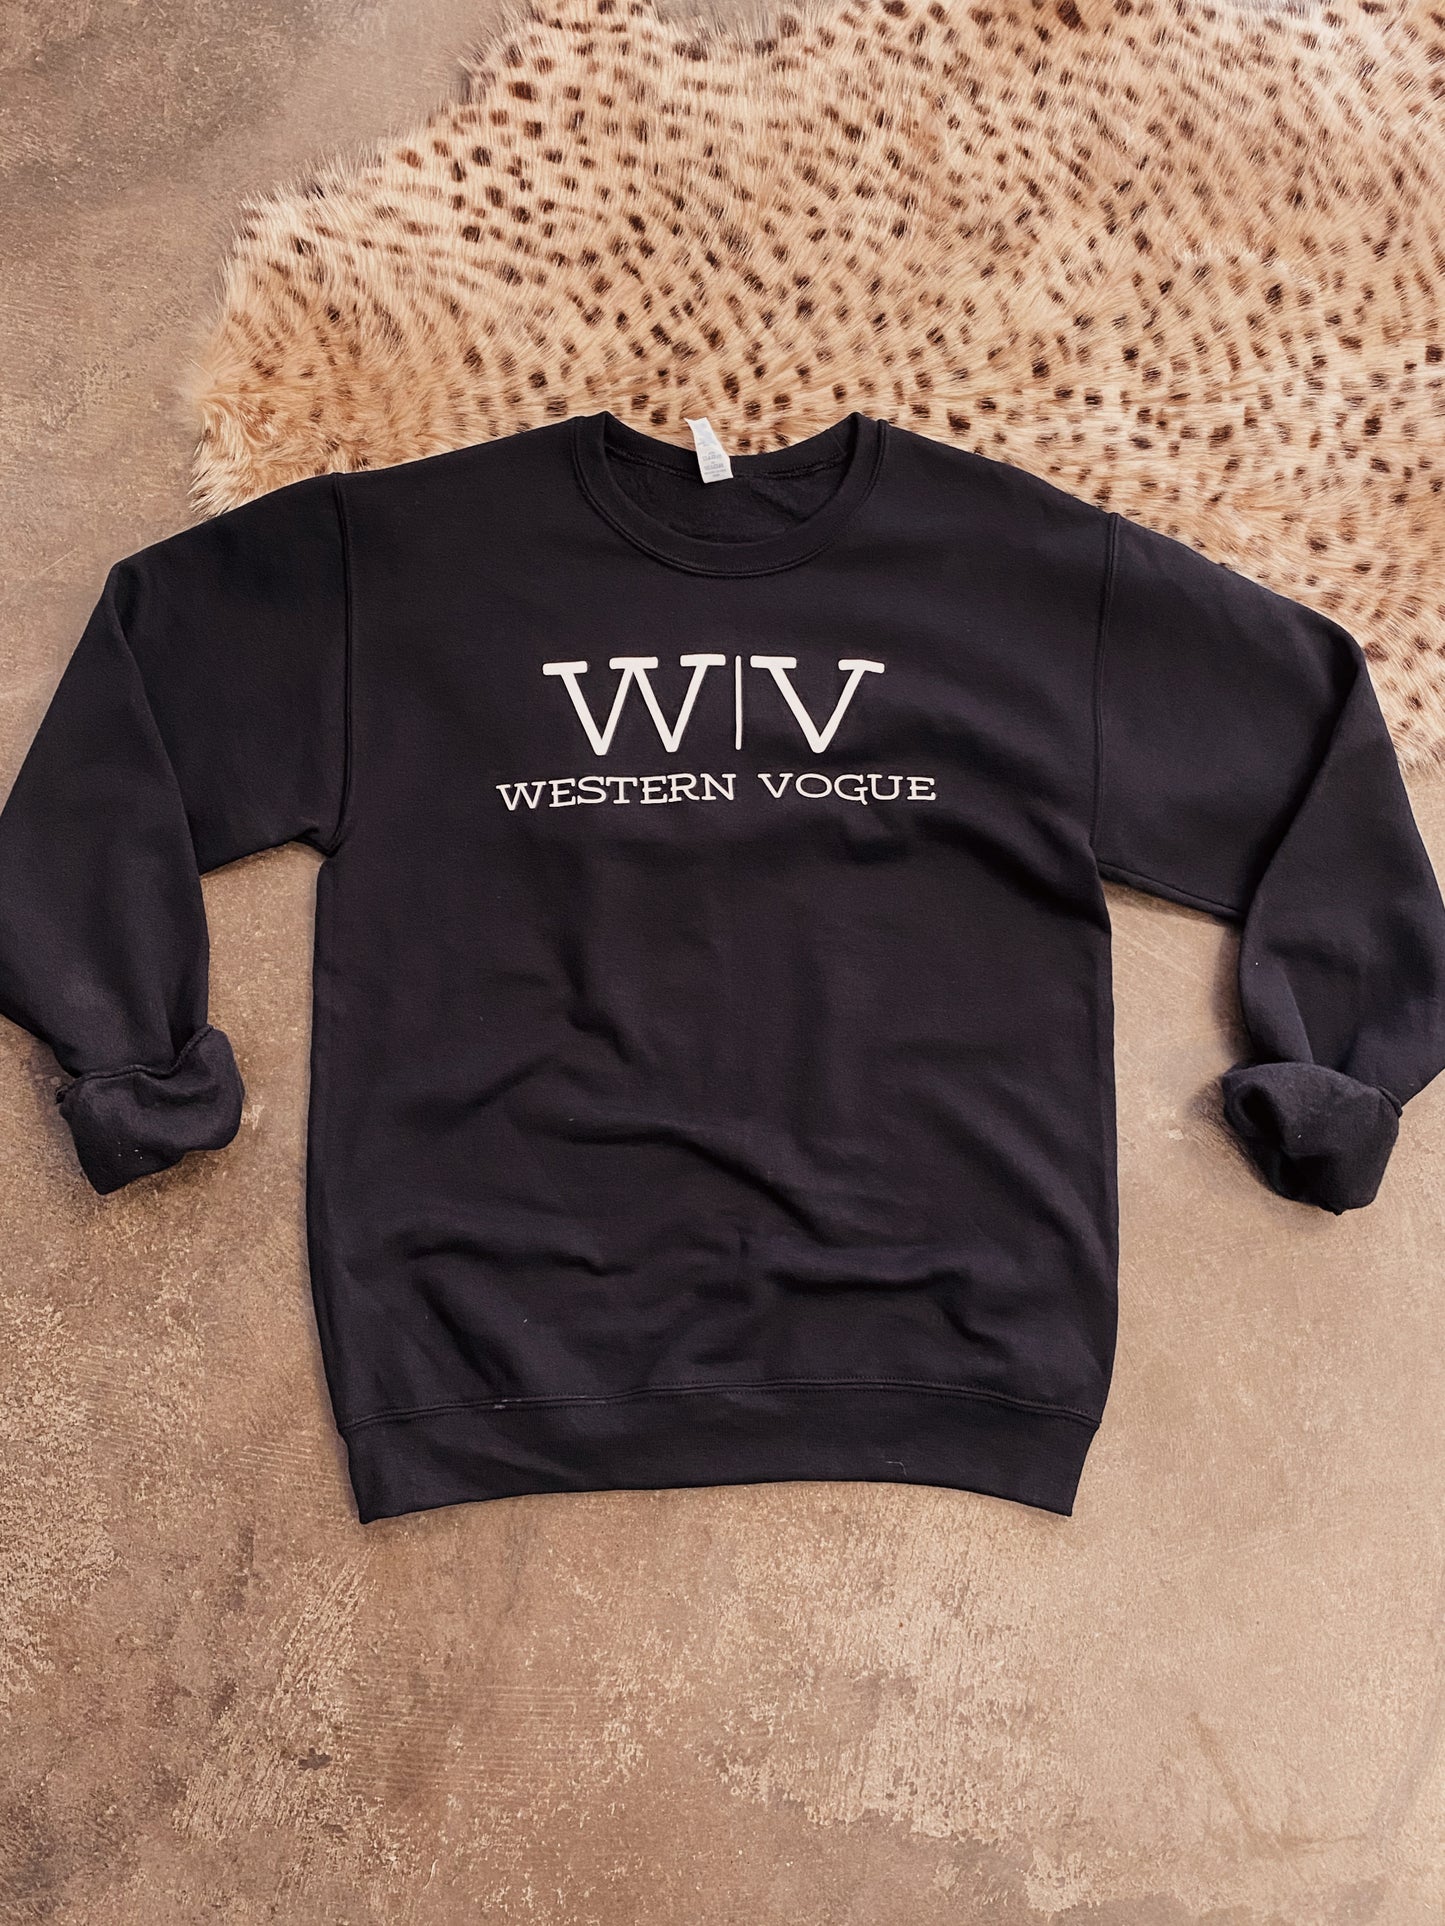 The Western Vogue Sweatshirt